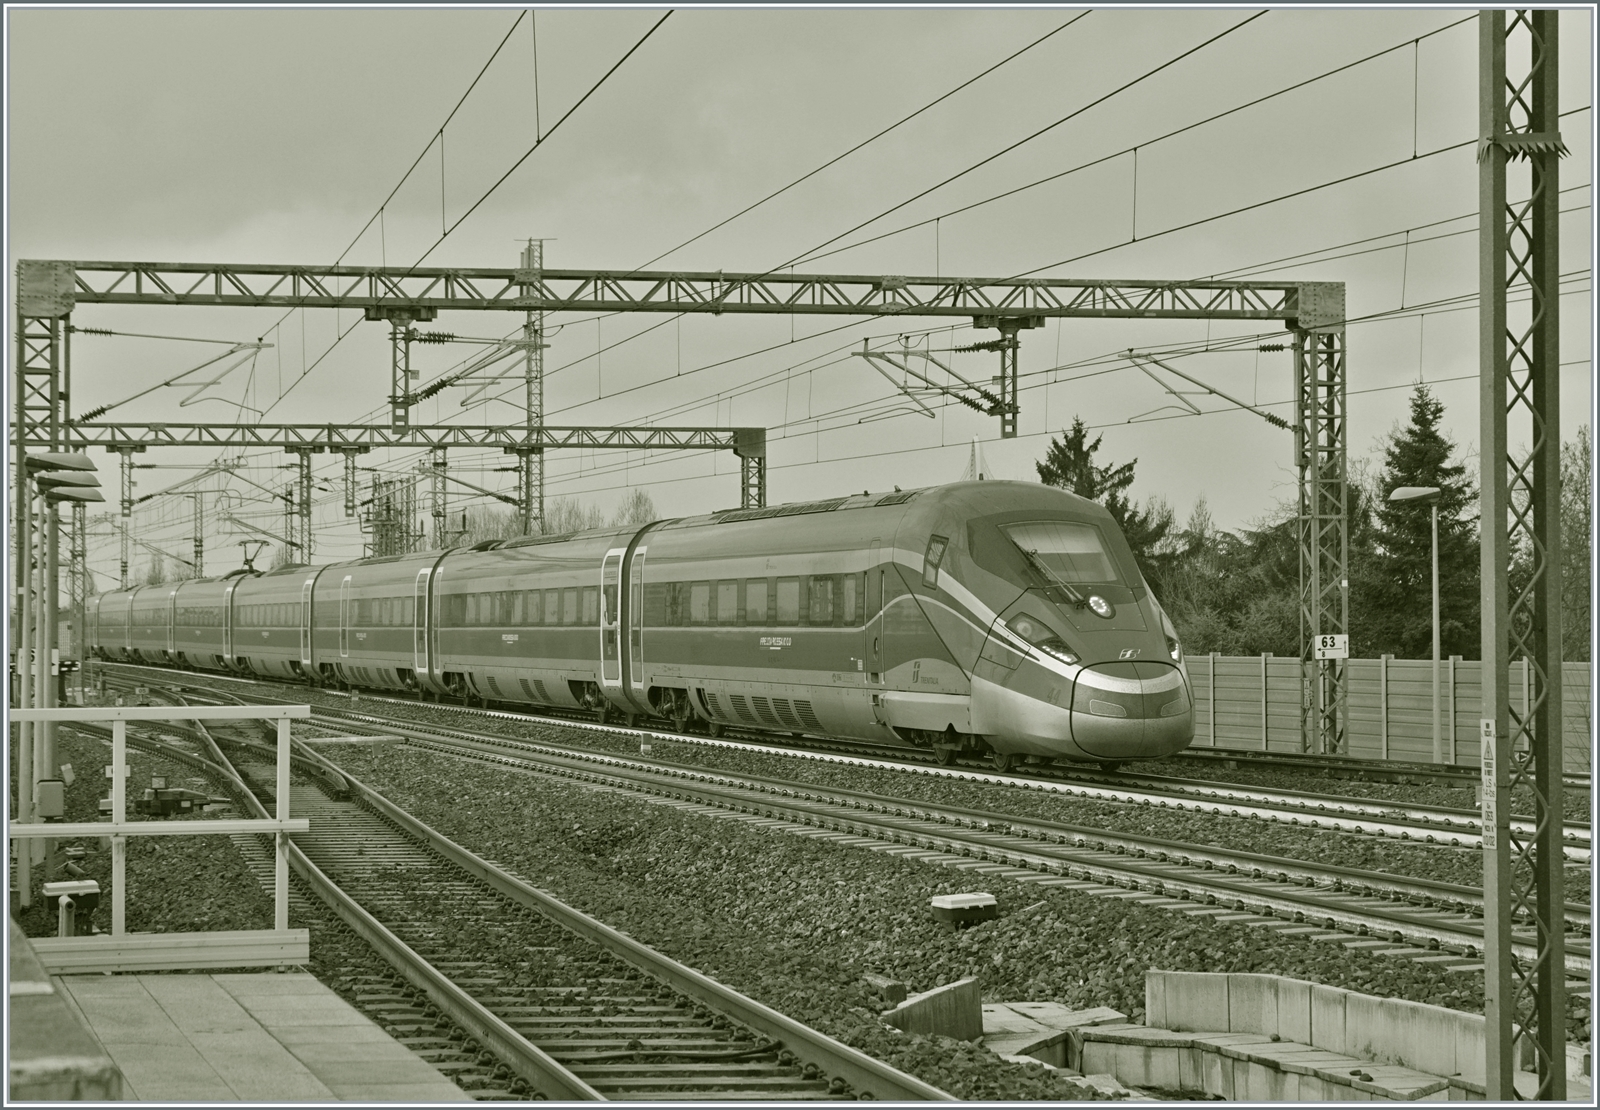 High speed in S/W: Der FS Trenitalia ETR 400 044 ist als  Frecciarossa 1000  FR 9623 von Milano Centrale nach Roma Termini unterwegs und fährt mit einer beachtlichen Geschwindigkeit durch den Bahnhof von Reggio Emilia AV. 

14. März 2023